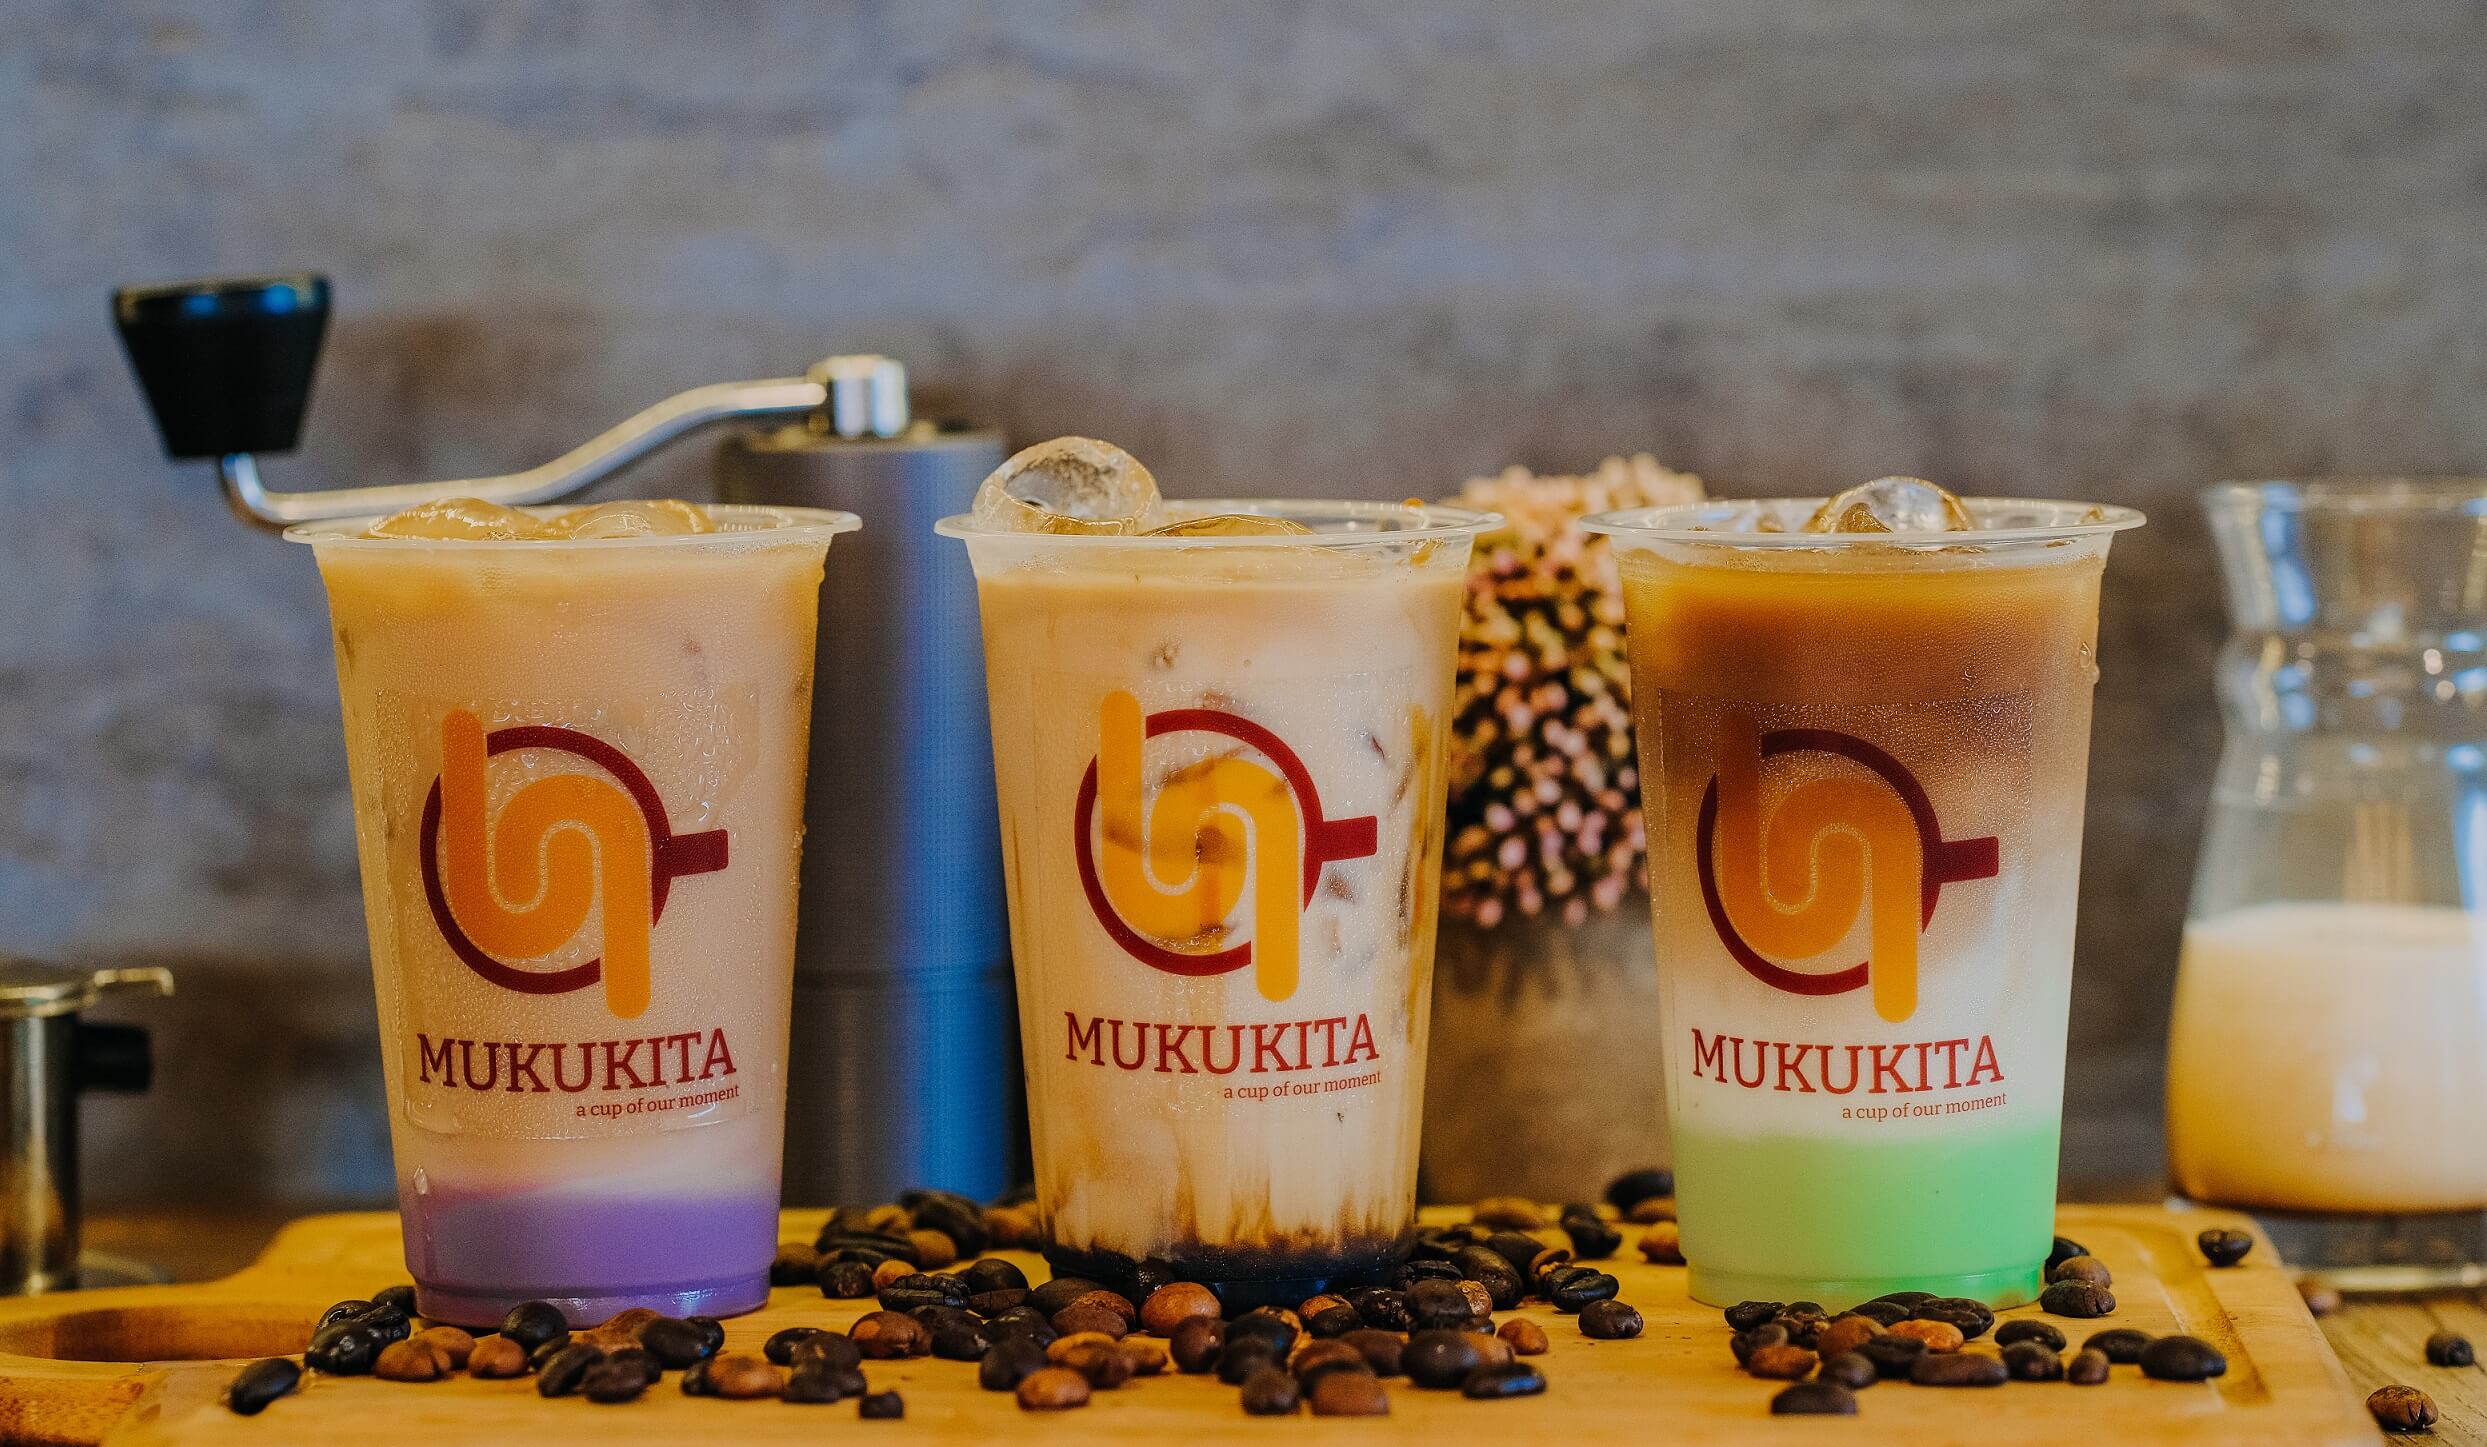 Mukukita Coffee Services